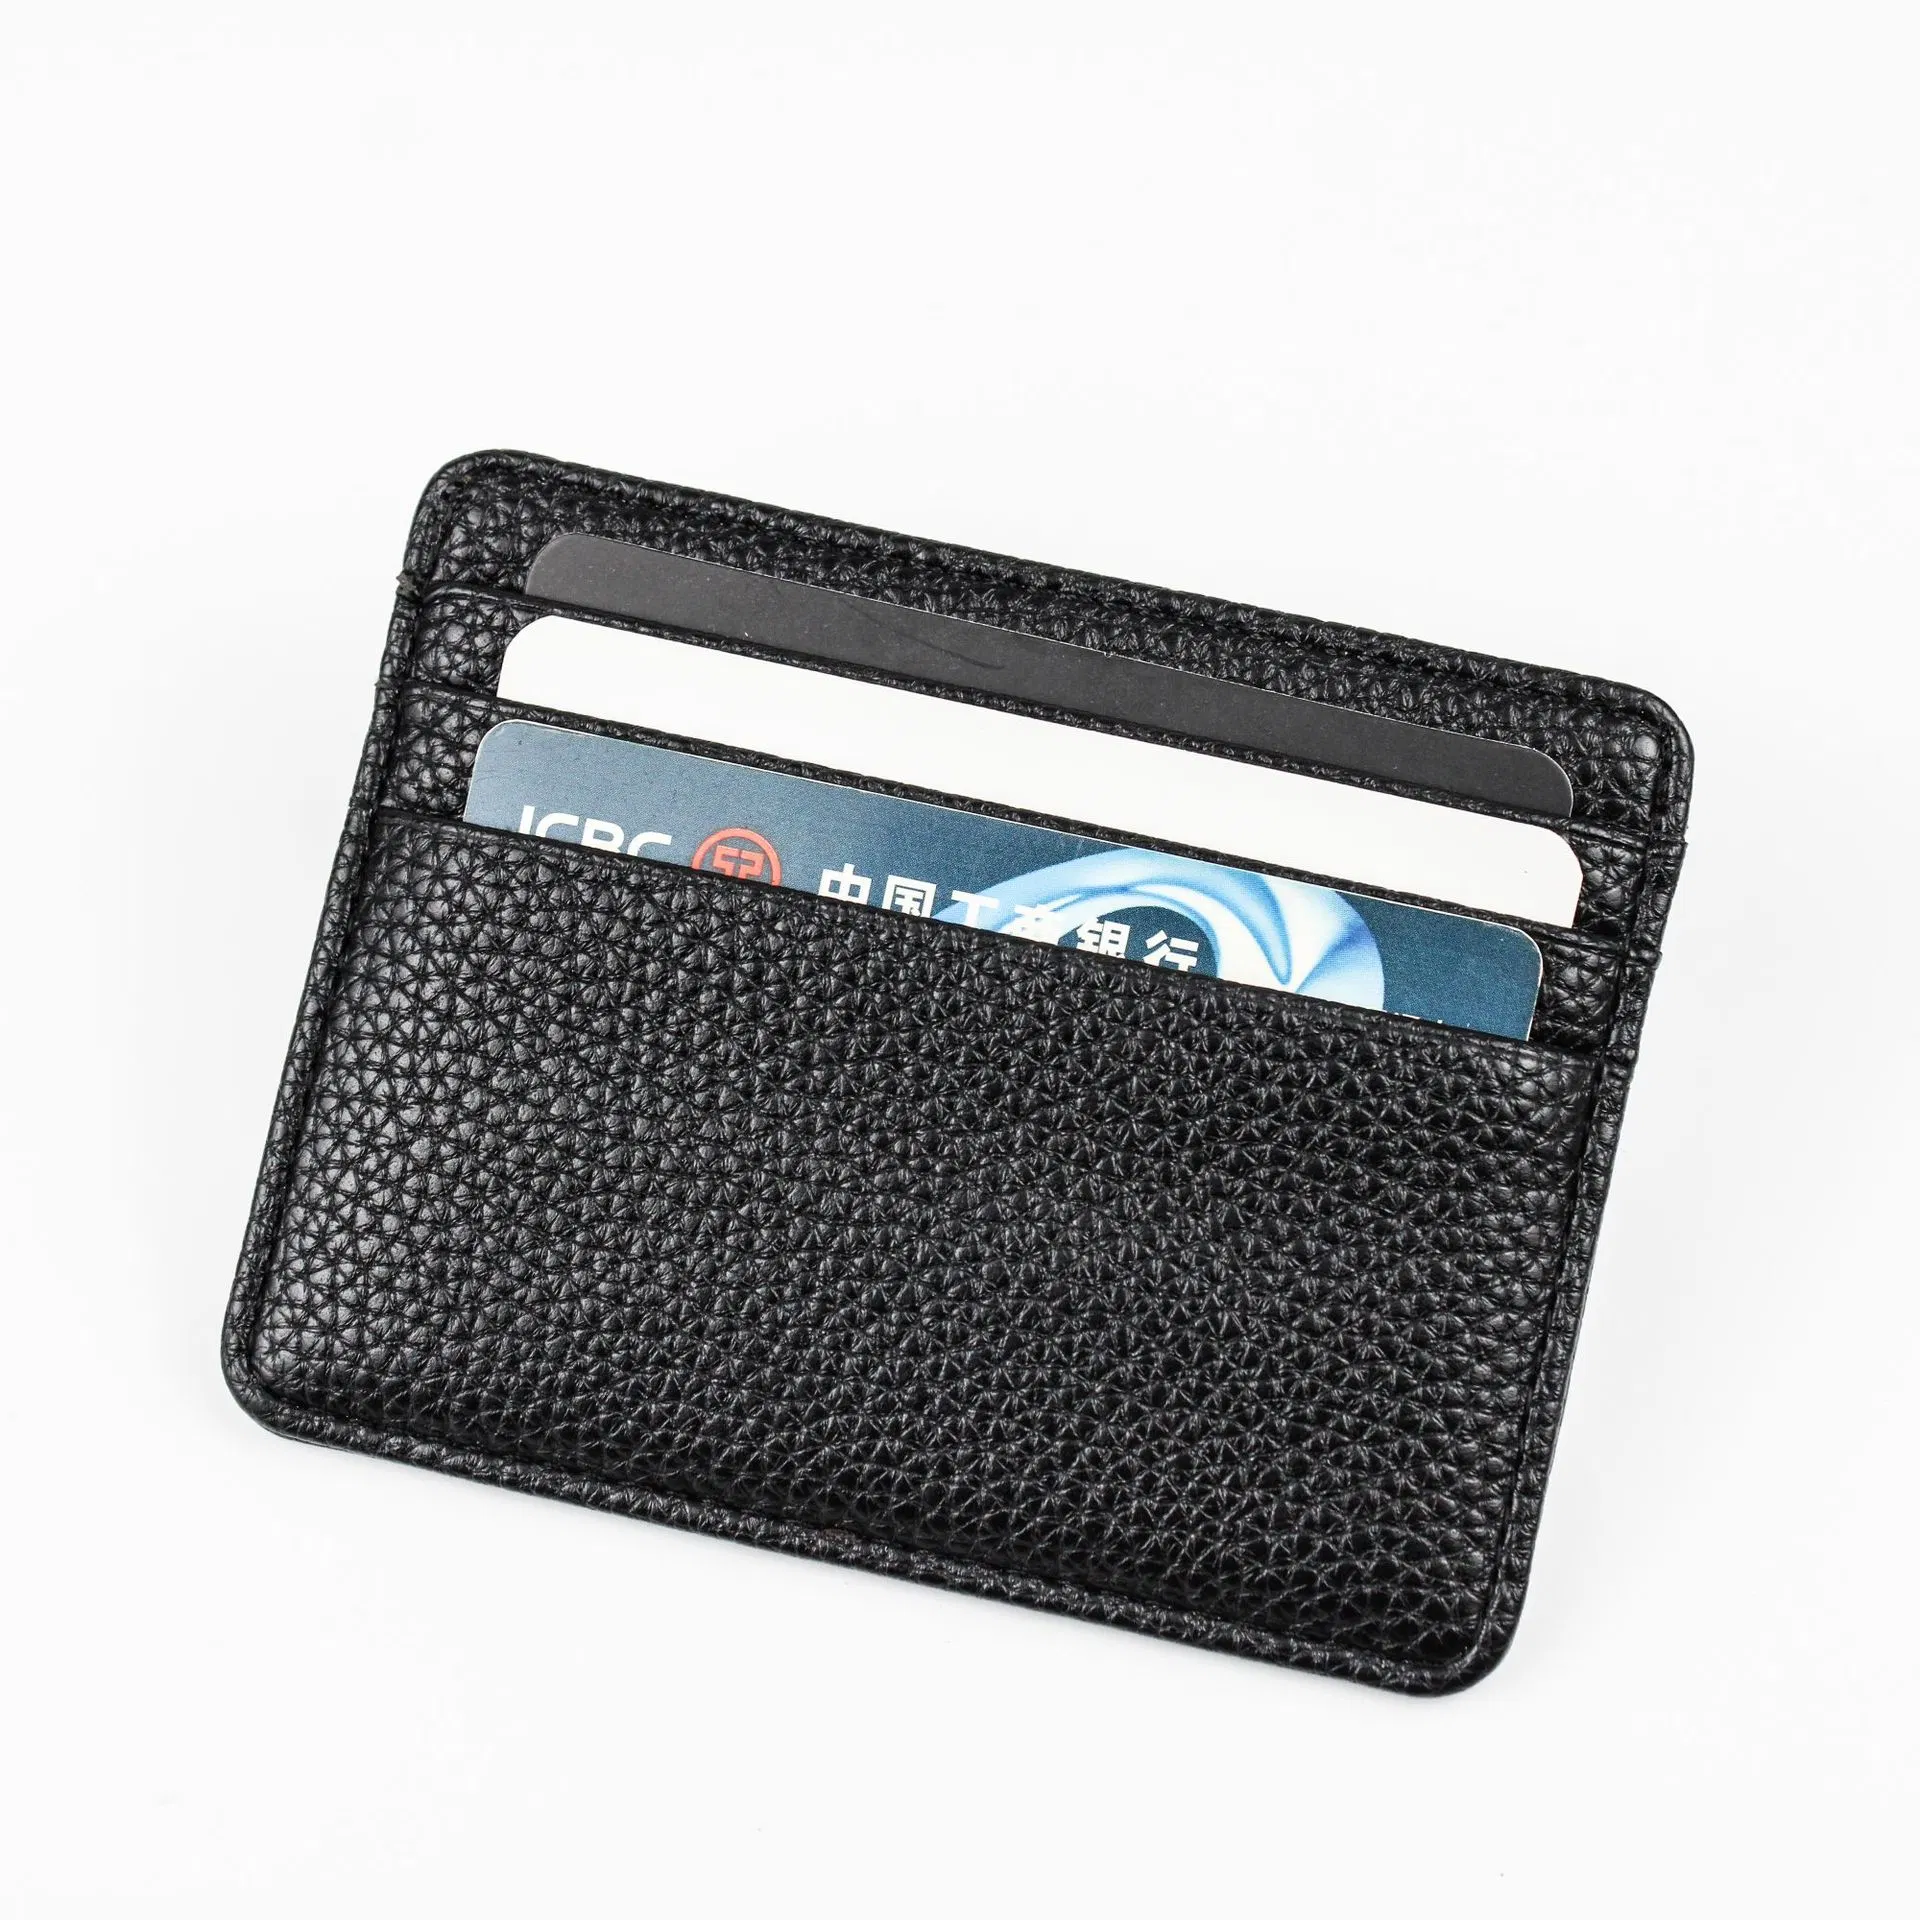 Custom Saffiano Leather Card Holder Slim Credit Card Holder Wallet